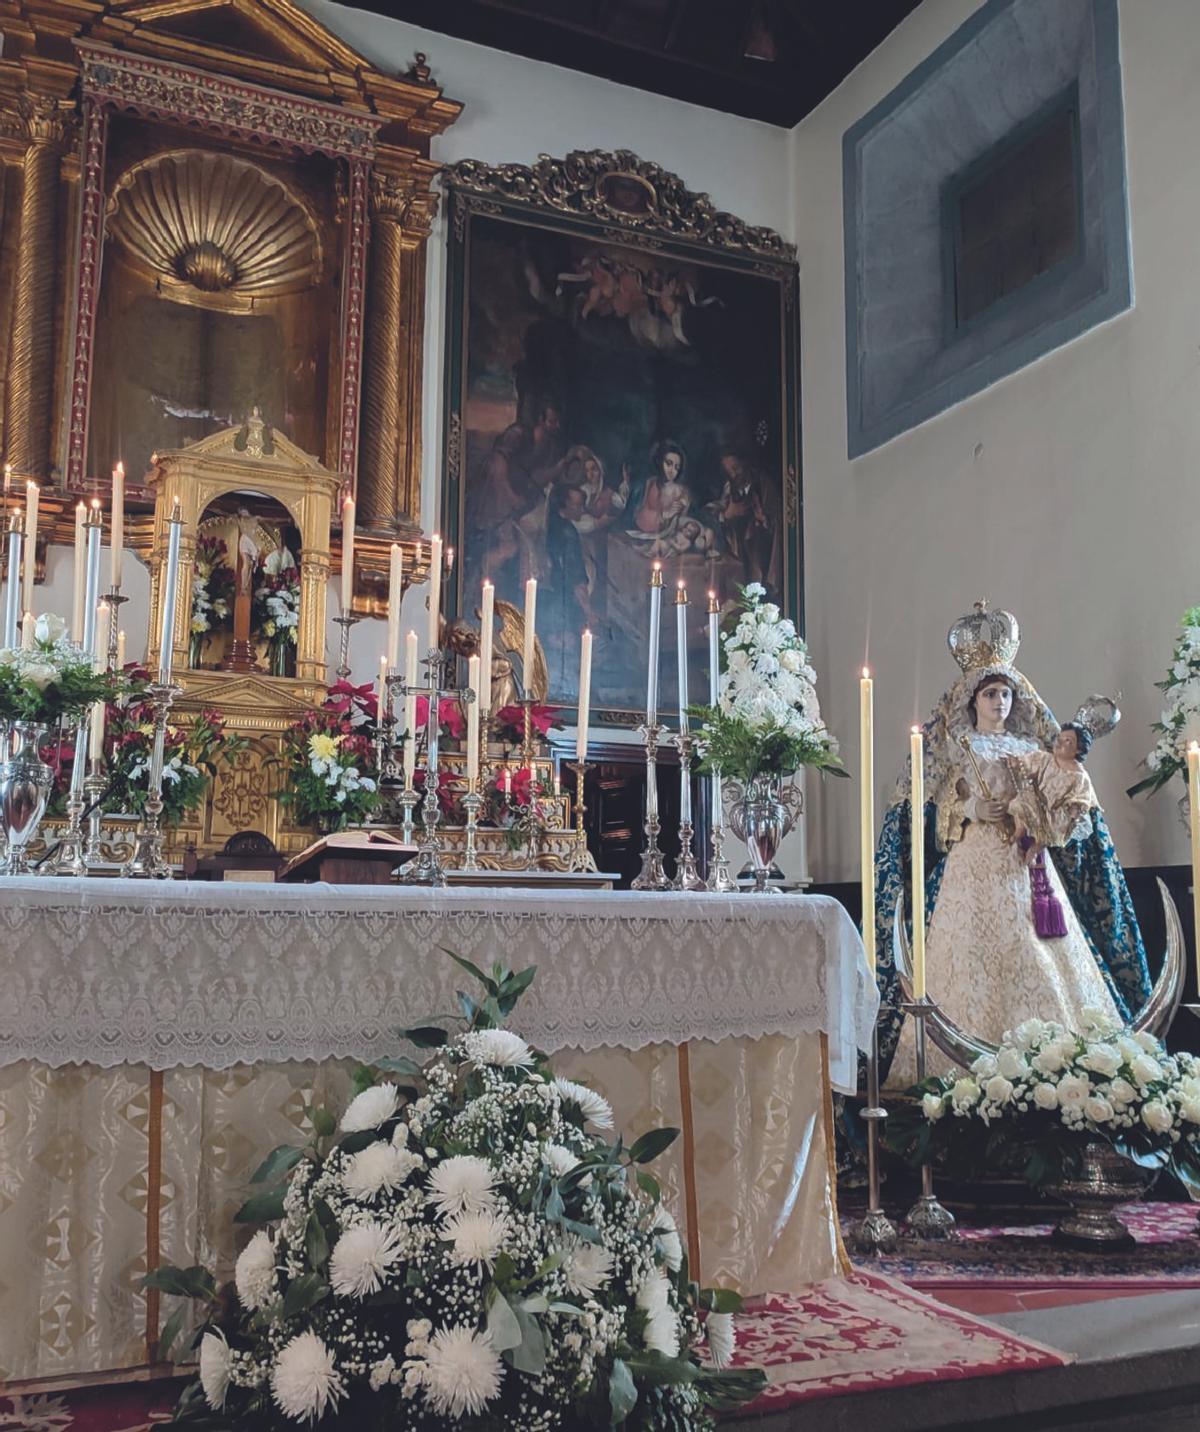 Imagen de la ermita de Nuestra Señora de los Reyes, popularmente conocida como la joya de Vegueta.